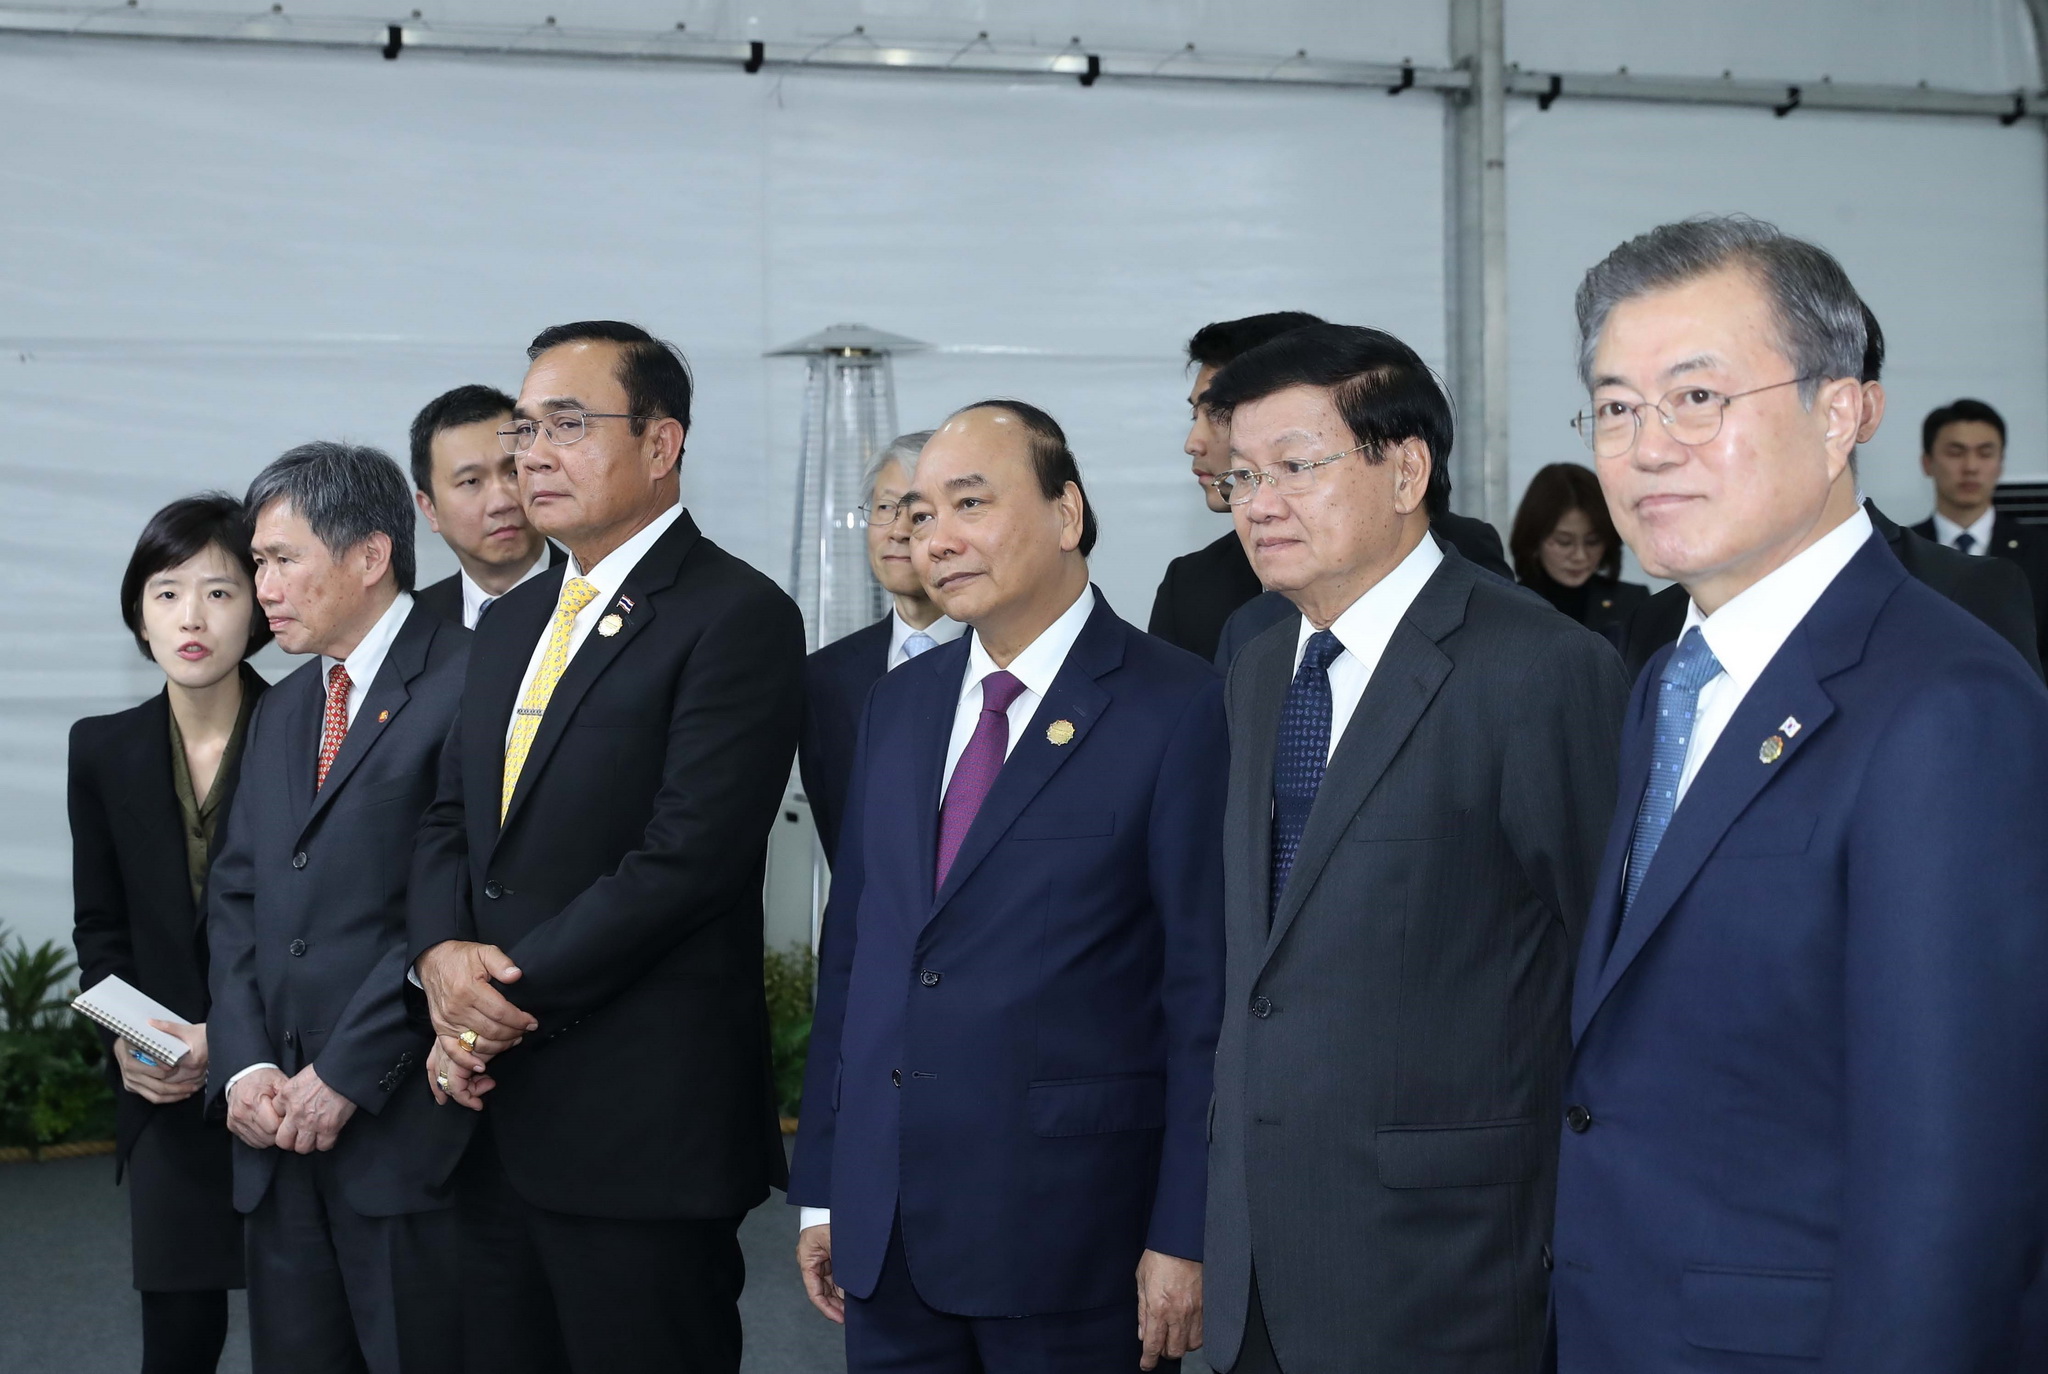 Thủ tướng Chính phủ Nguyễn Xuân Phúc, Tổng thống Hàn Quốc Moon Jae-in, Thủ tướng Lào, Thủ tướng Thái Lan, Tổng thư ký ASEAN Lim Jock Hoi xem triển lãm. (Ảnh: Thống Nhất/TTXVN)